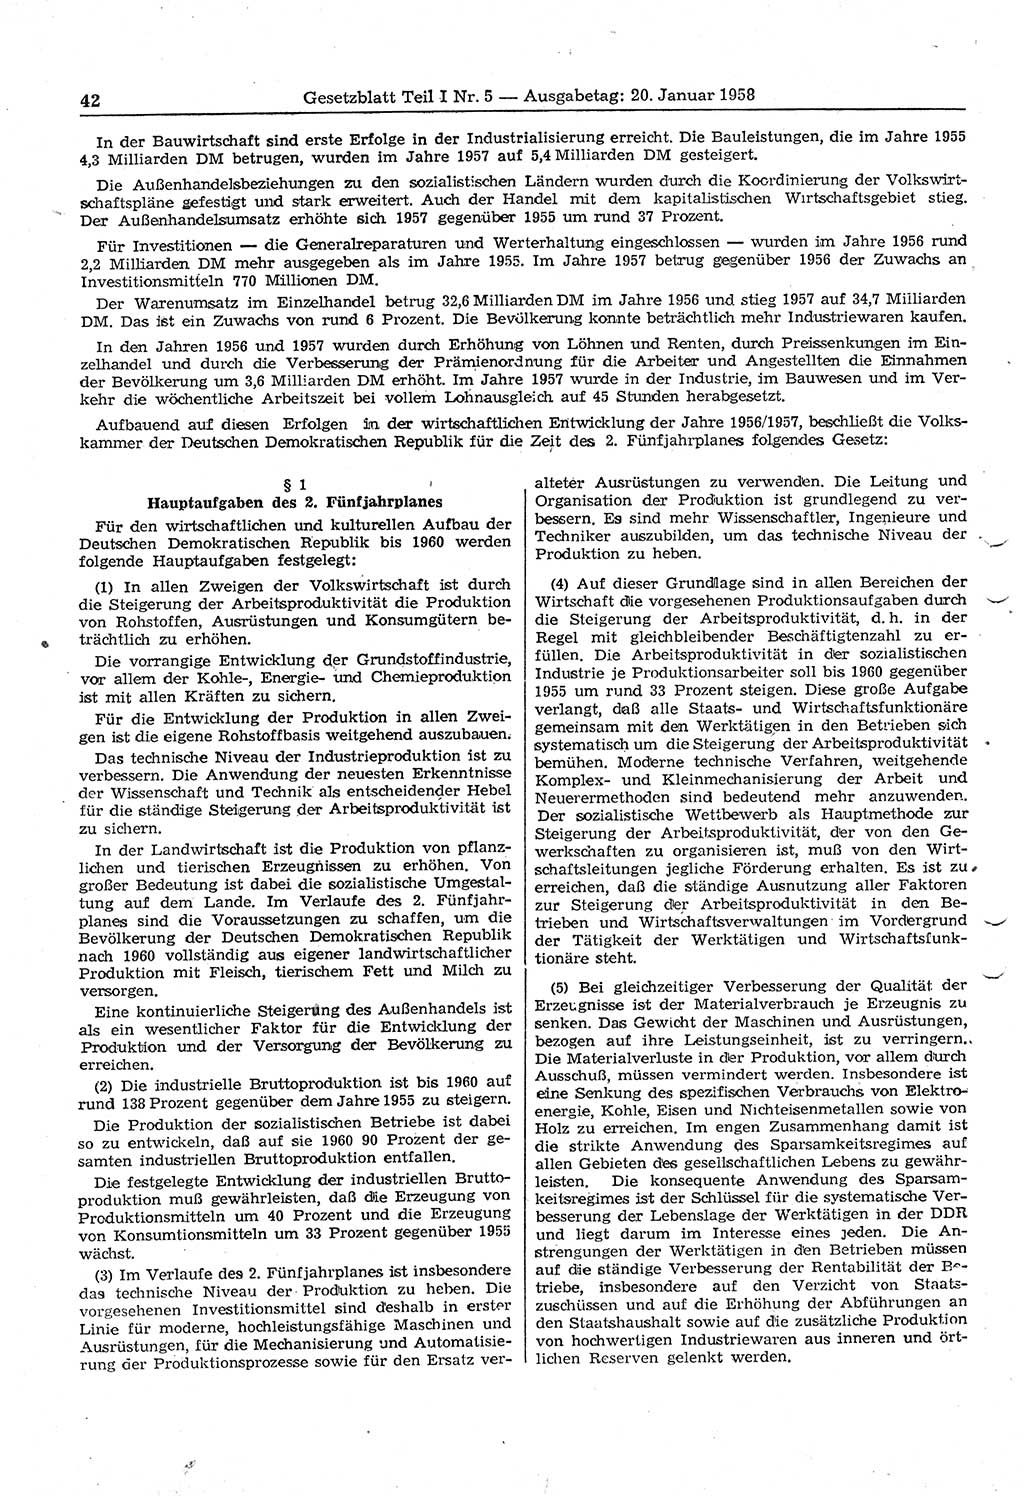 Gesetzblatt (GBl.) der Deutschen Demokratischen Republik (DDR) Teil Ⅰ 1958, Seite 42 (GBl. DDR Ⅰ 1958, S. 42)